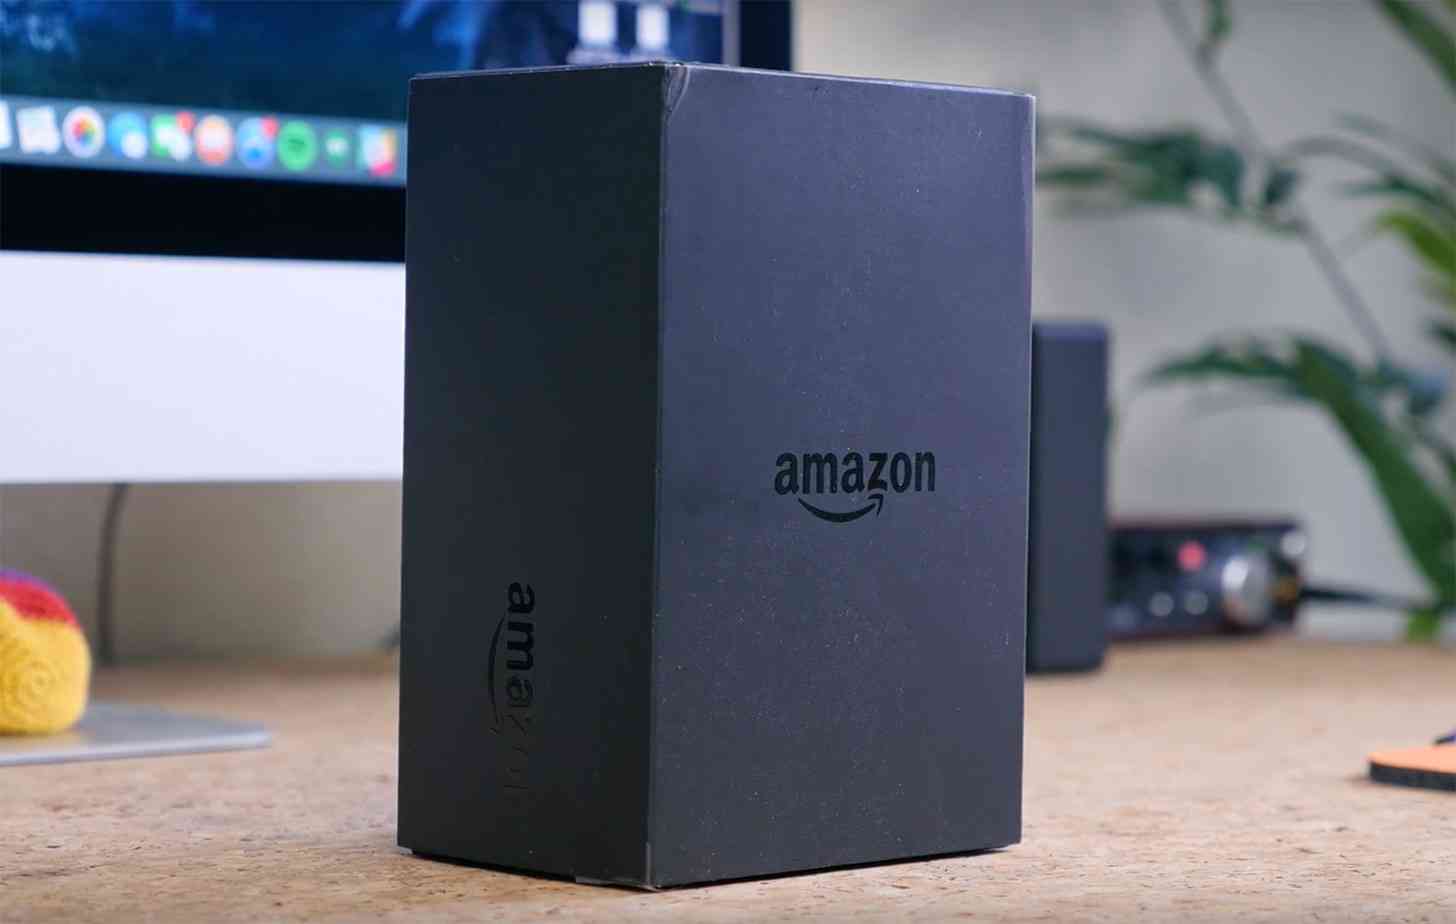 Amazon packaging logo